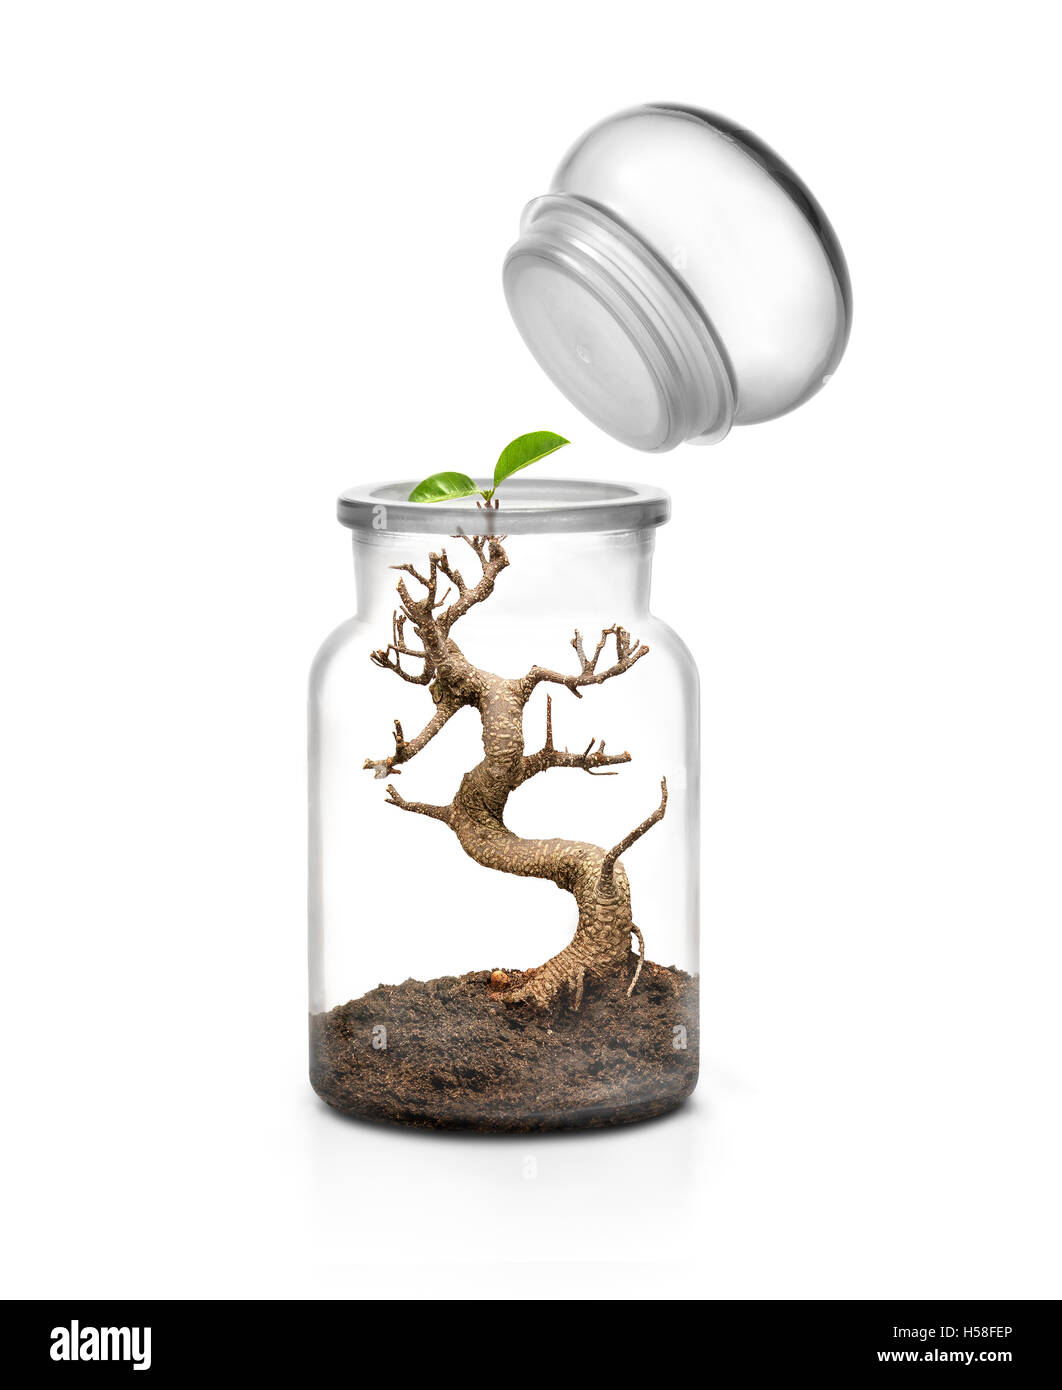 Concepto de supervivencia de la vida. Frasco de vidrio con tapa y bonsai creciente con el suelo interior contra el fondo blanco. Foto de stock